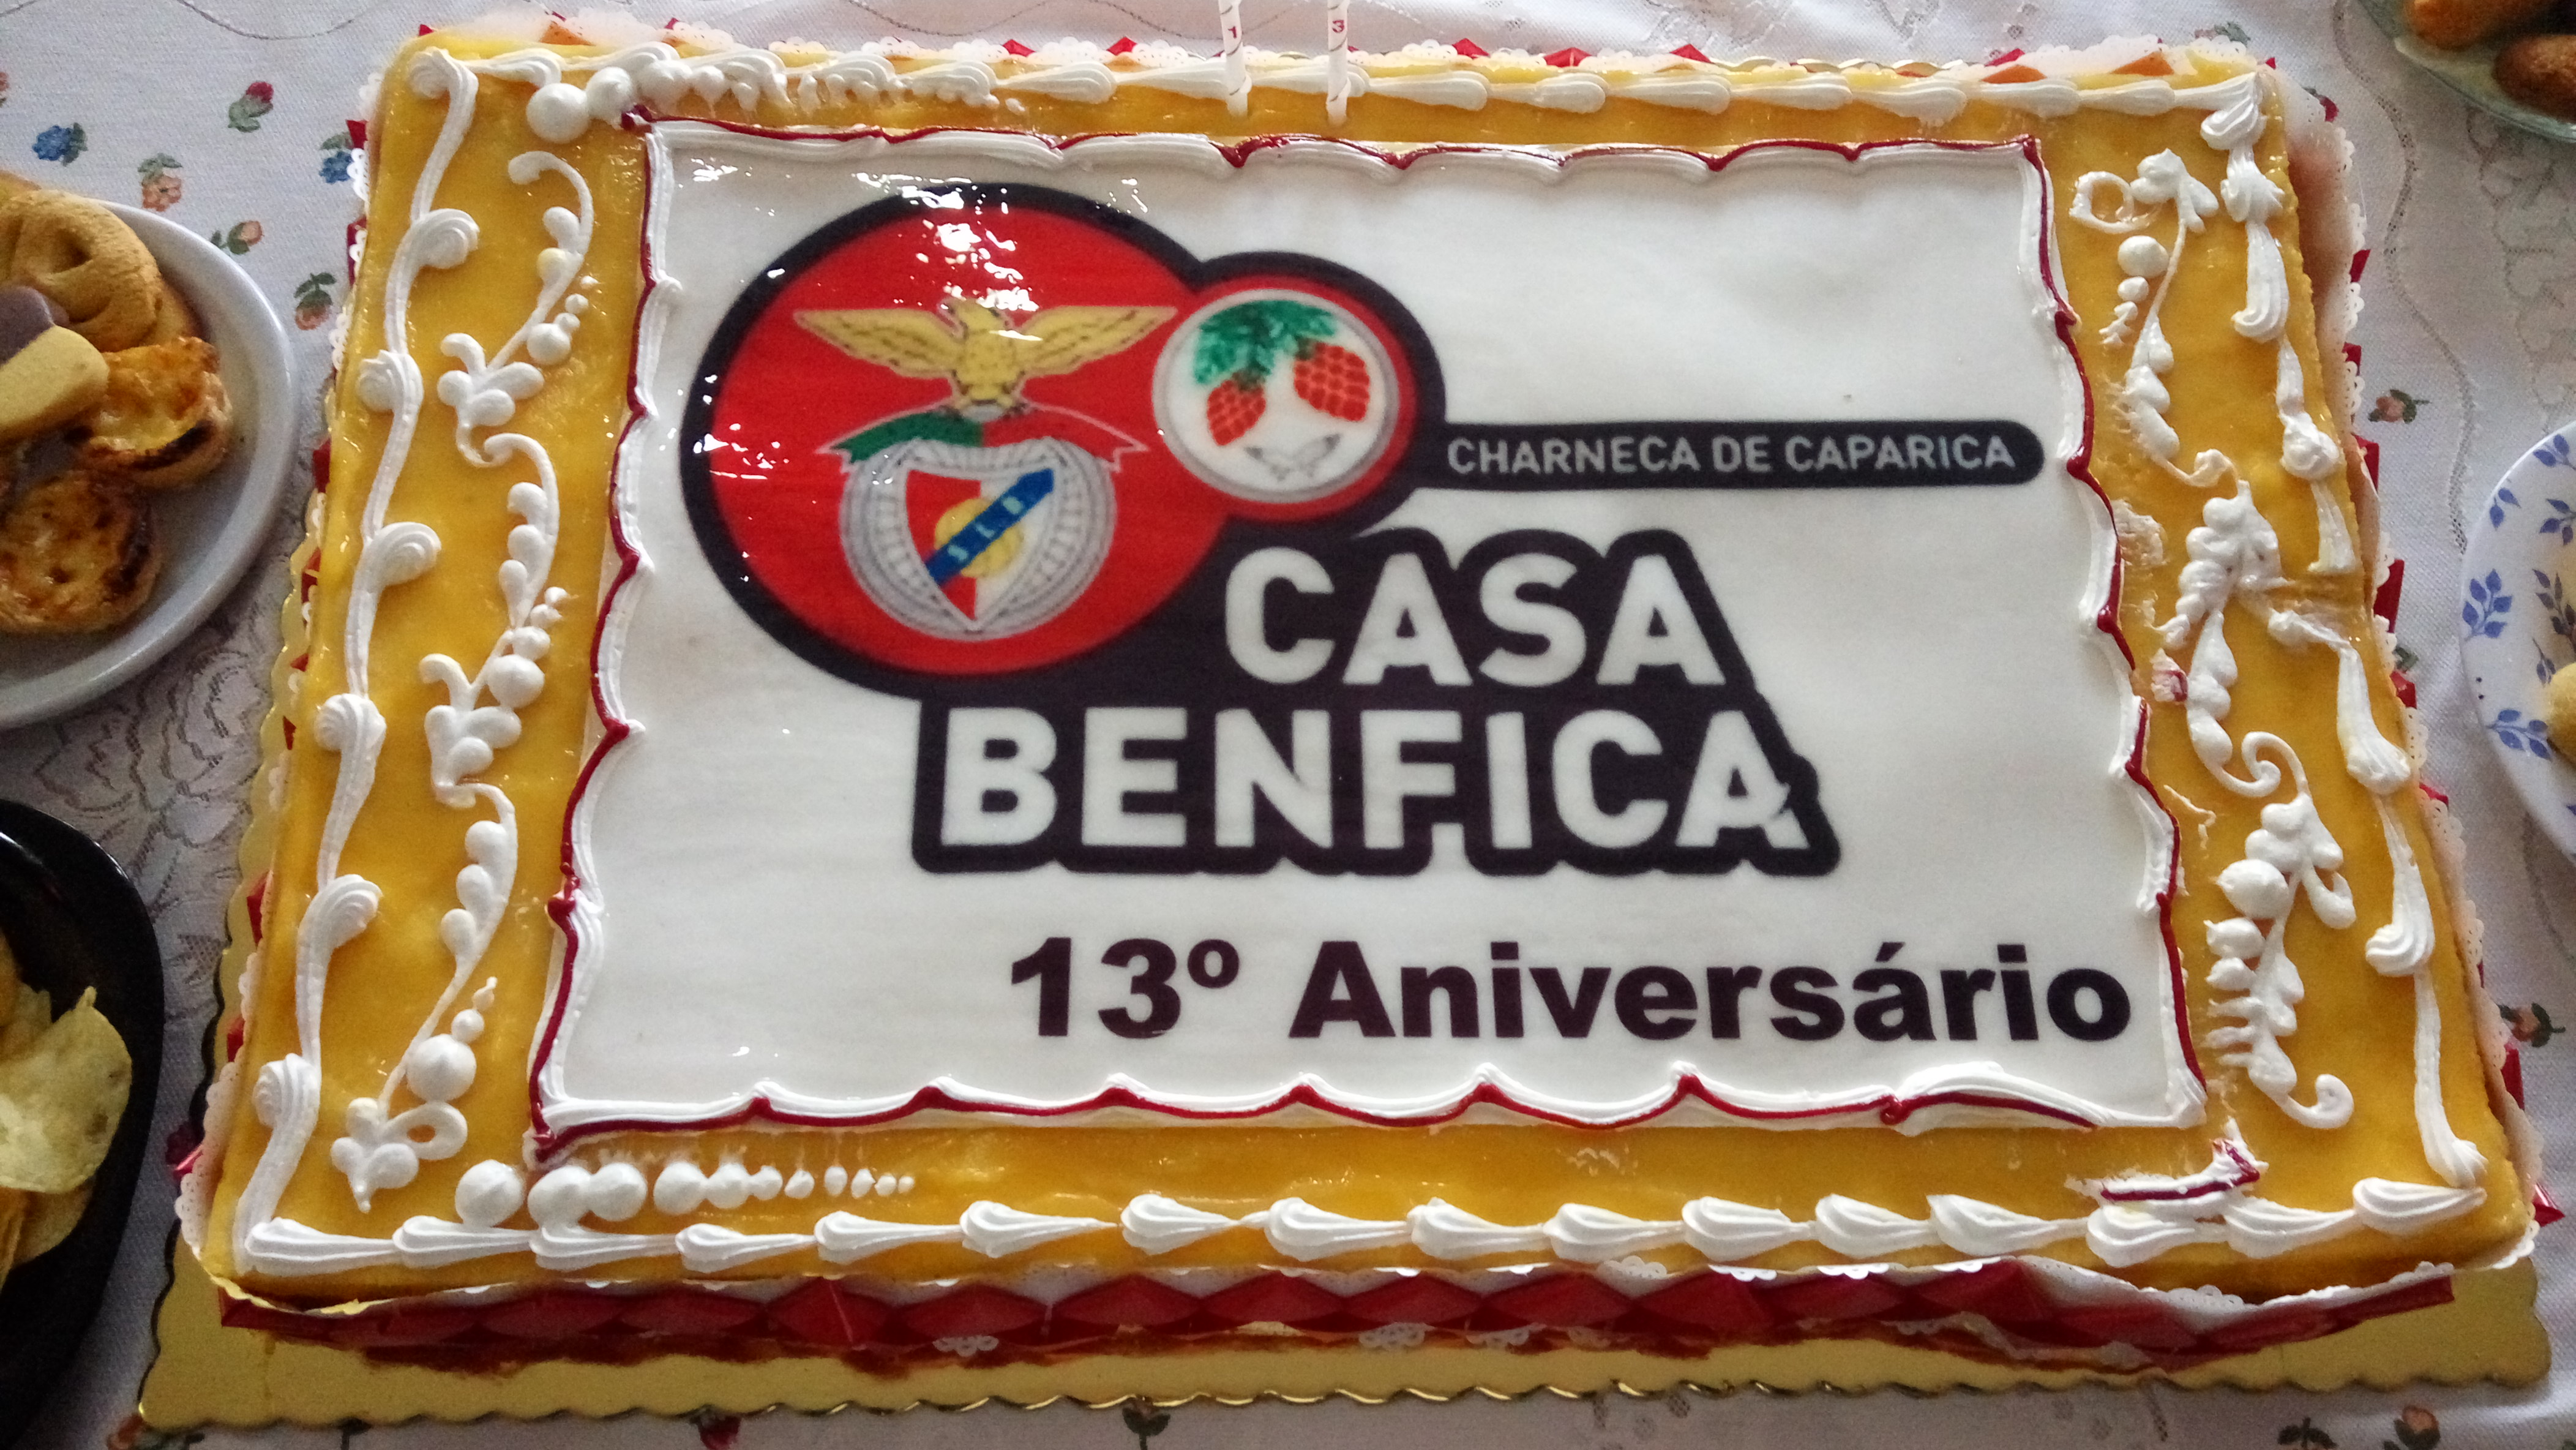 Dinâmica do futsal em destaque nos 13 anos da Casa do Benfica na Charneca de Caparica